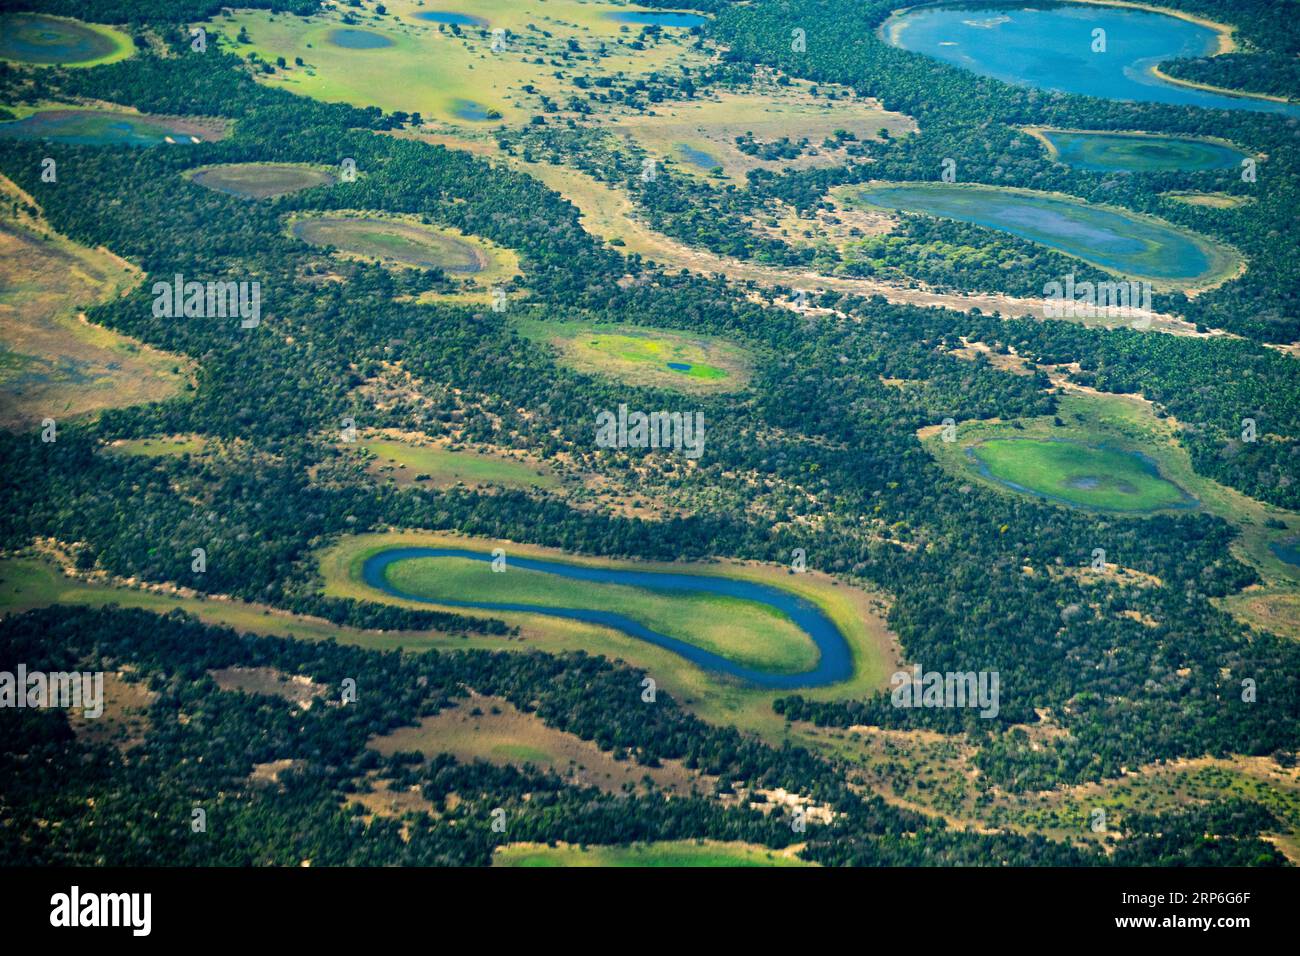 Salines et étangs formés pendant la saison sèche dans la région de Nhecolandia, Pantanal, Brésil. Banque D'Images